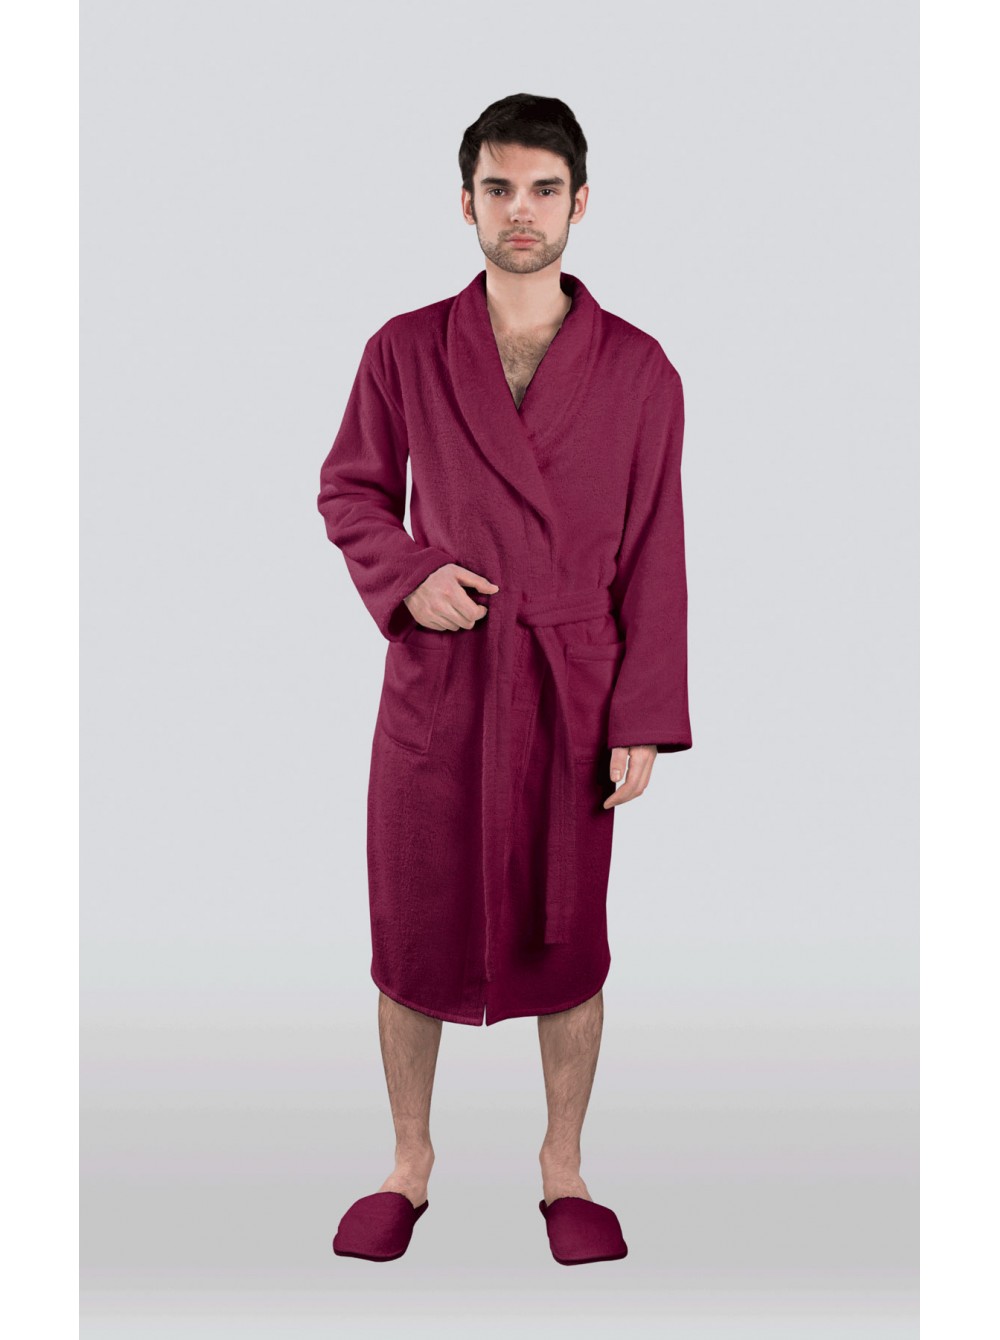 Таджикский халат. Бамбуковый халат Belette (PM France 735) 42-44. Таджикский халат мужской. Халат мужской бордовый махровый. Мужские халаты махра бордовые.